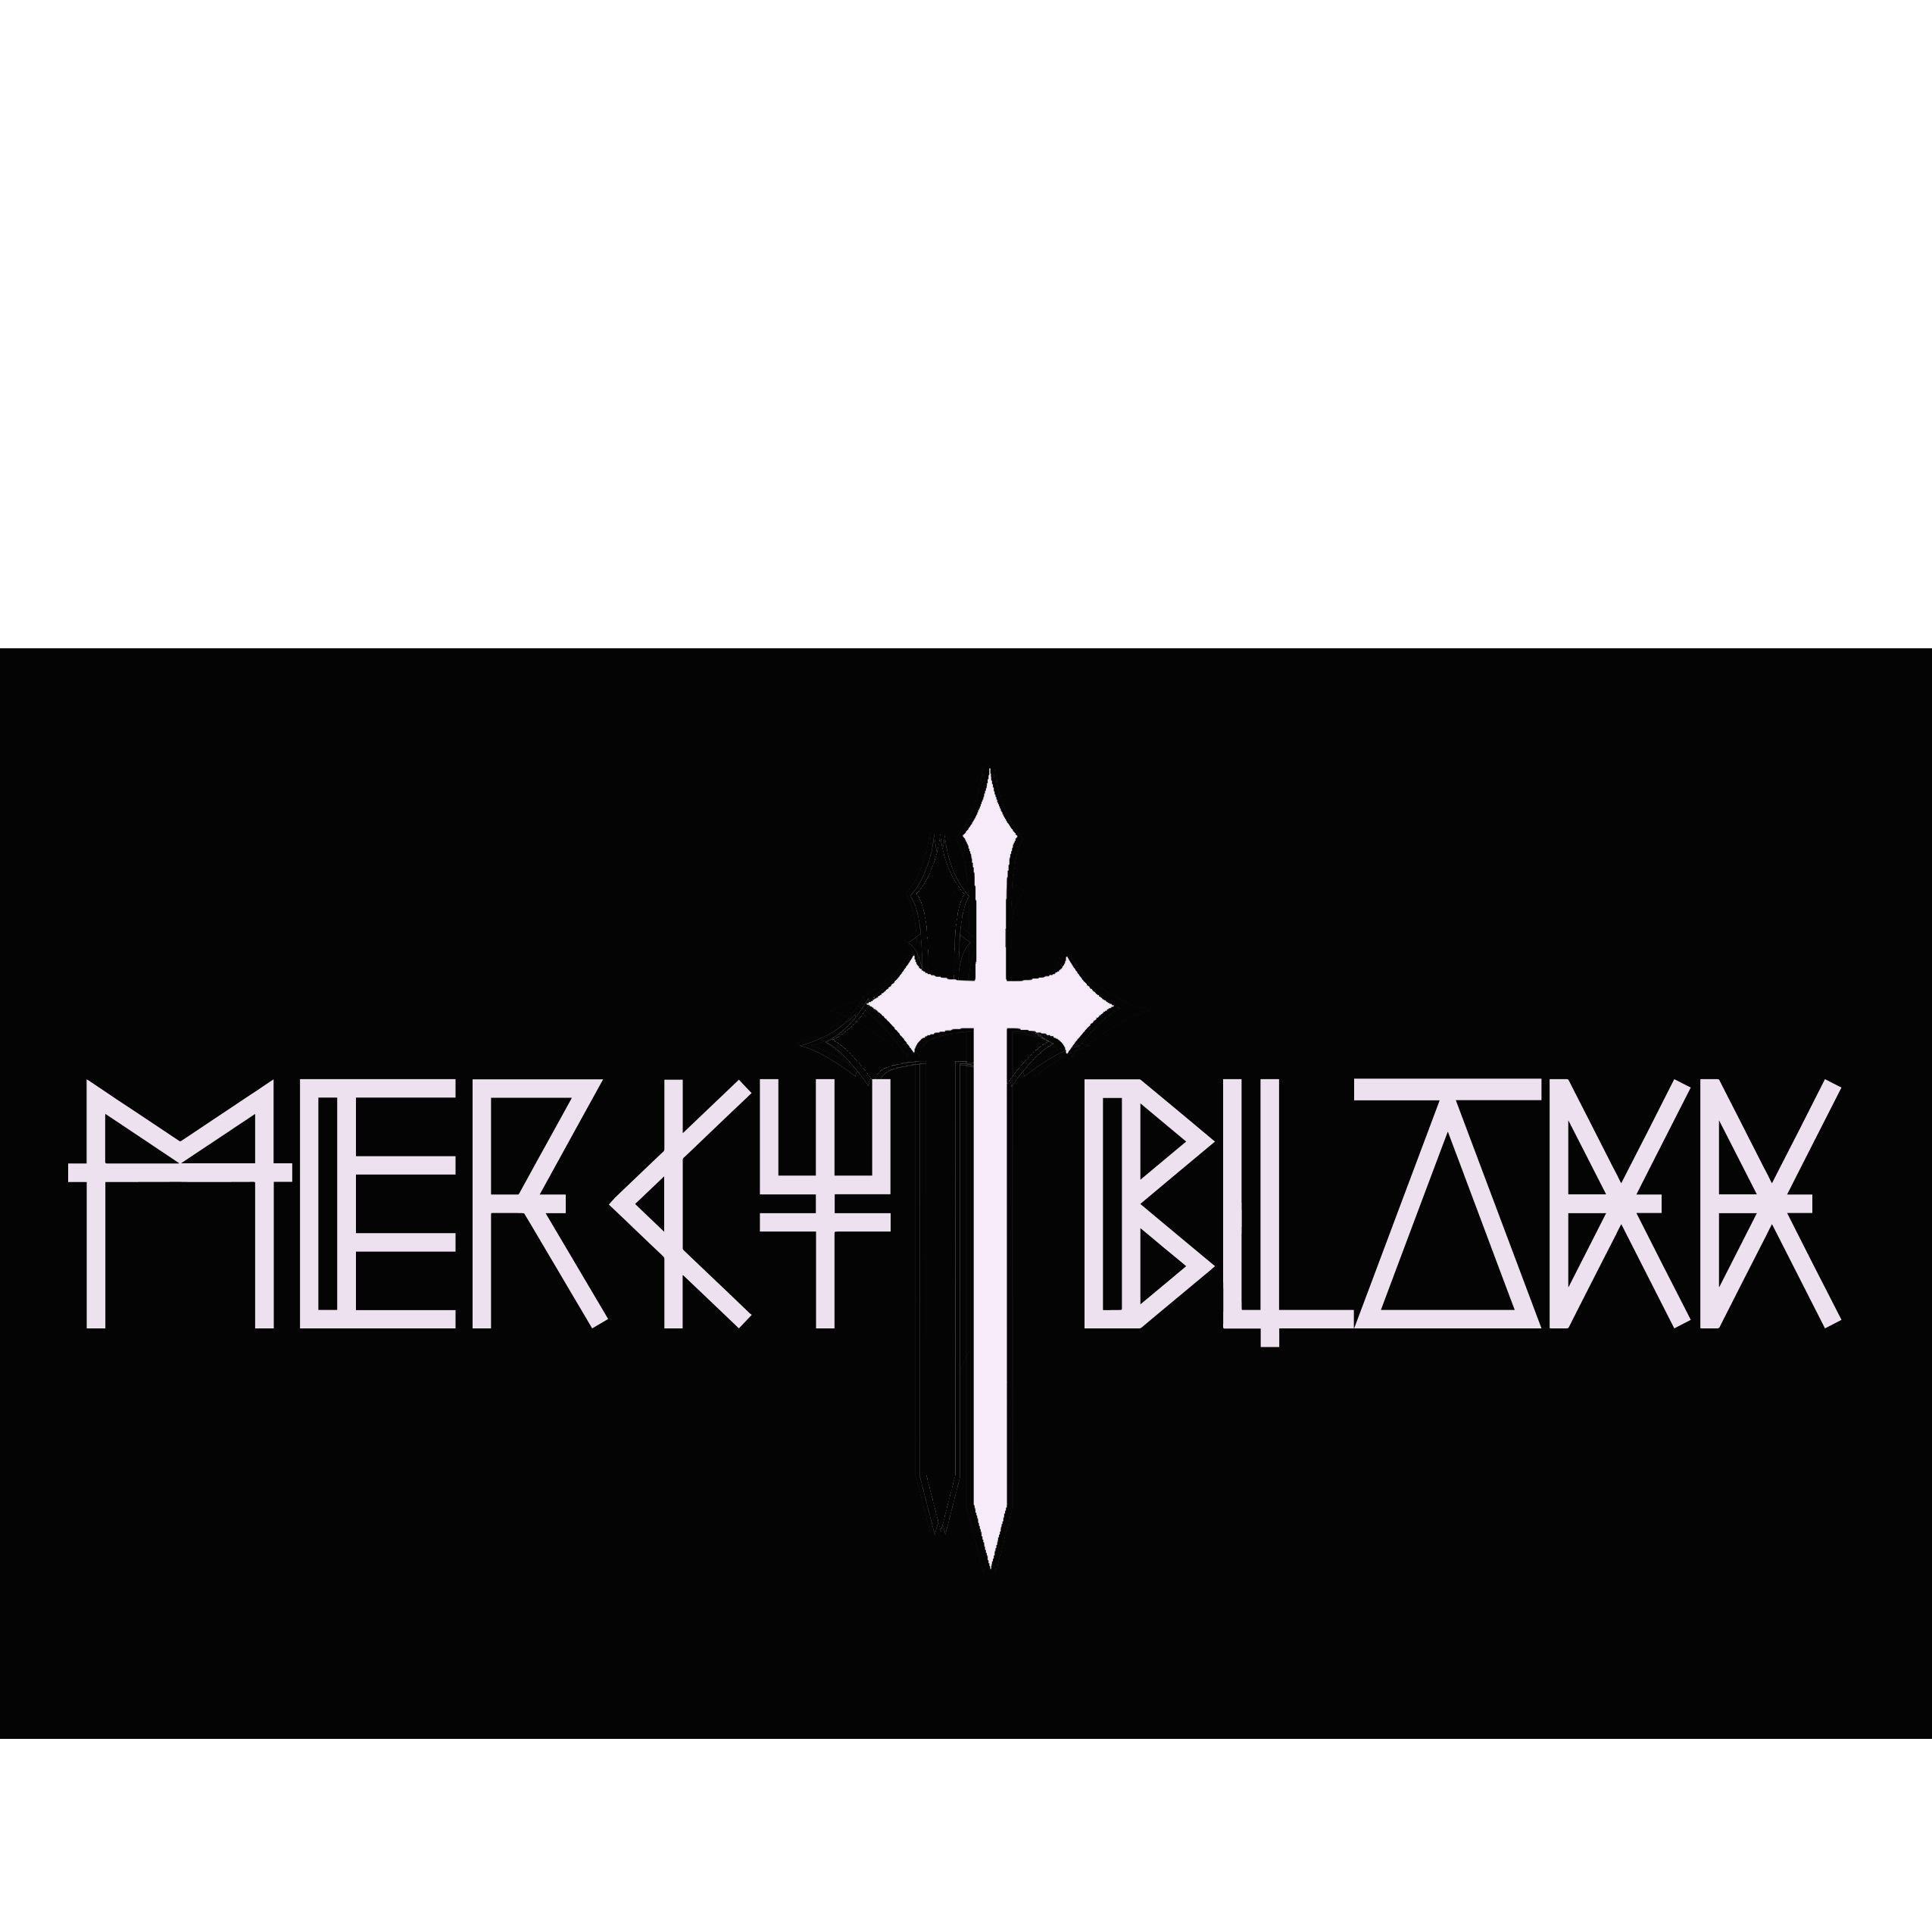 Mercy Blakk